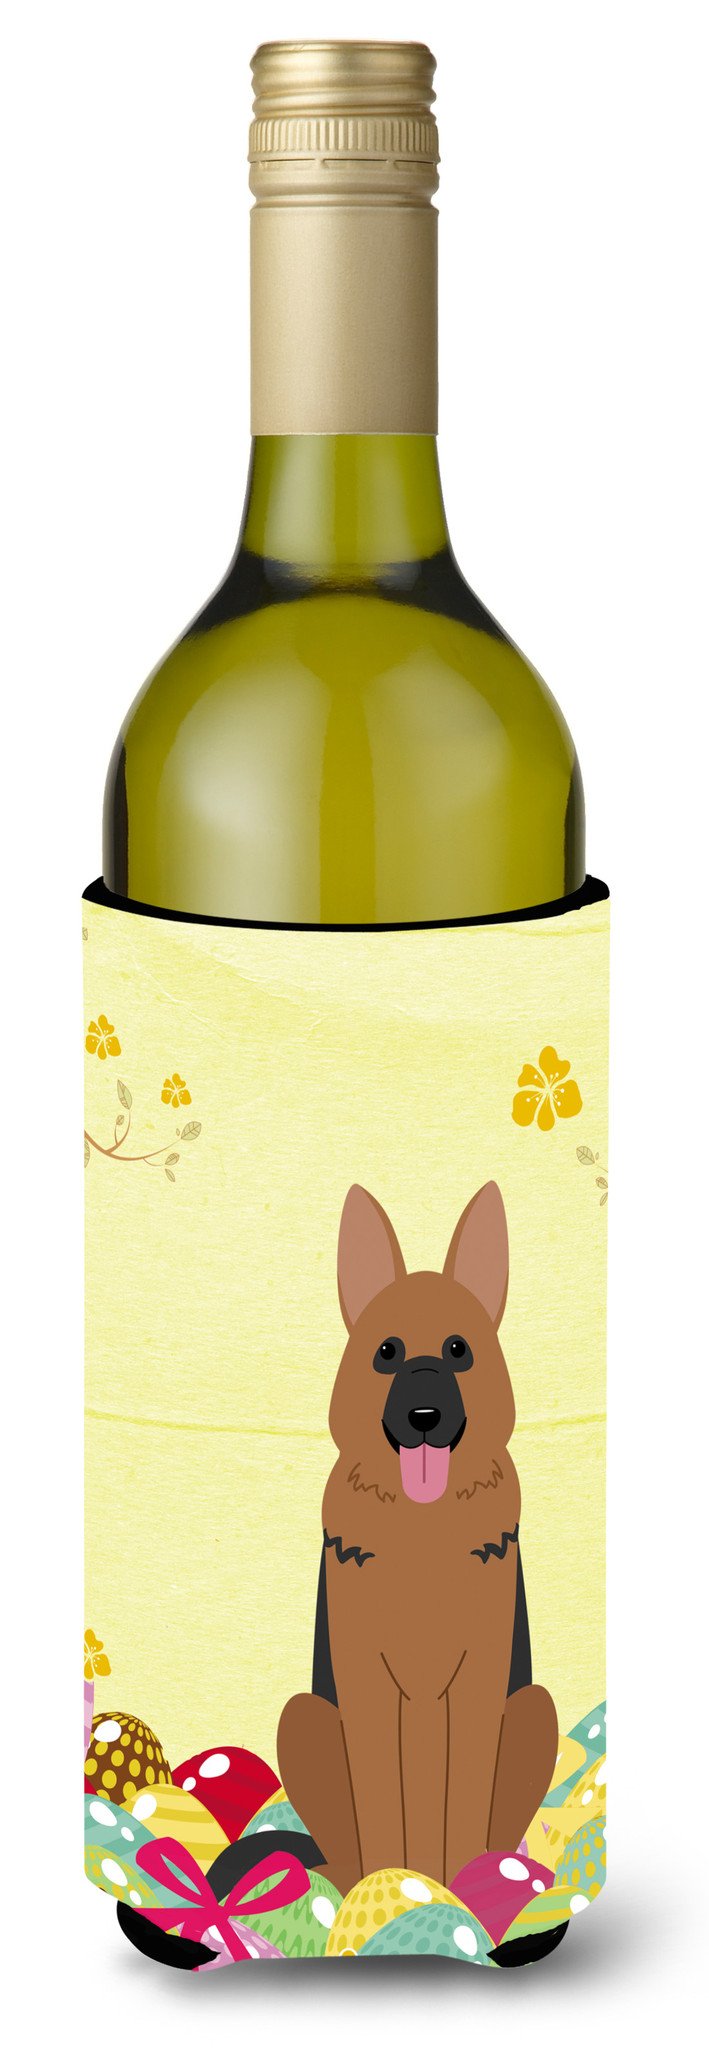 Easter Eggs German Shepherd Wine Bottle Beverge Insulator Hugger BB6067LITERK by Caroline's Treasures